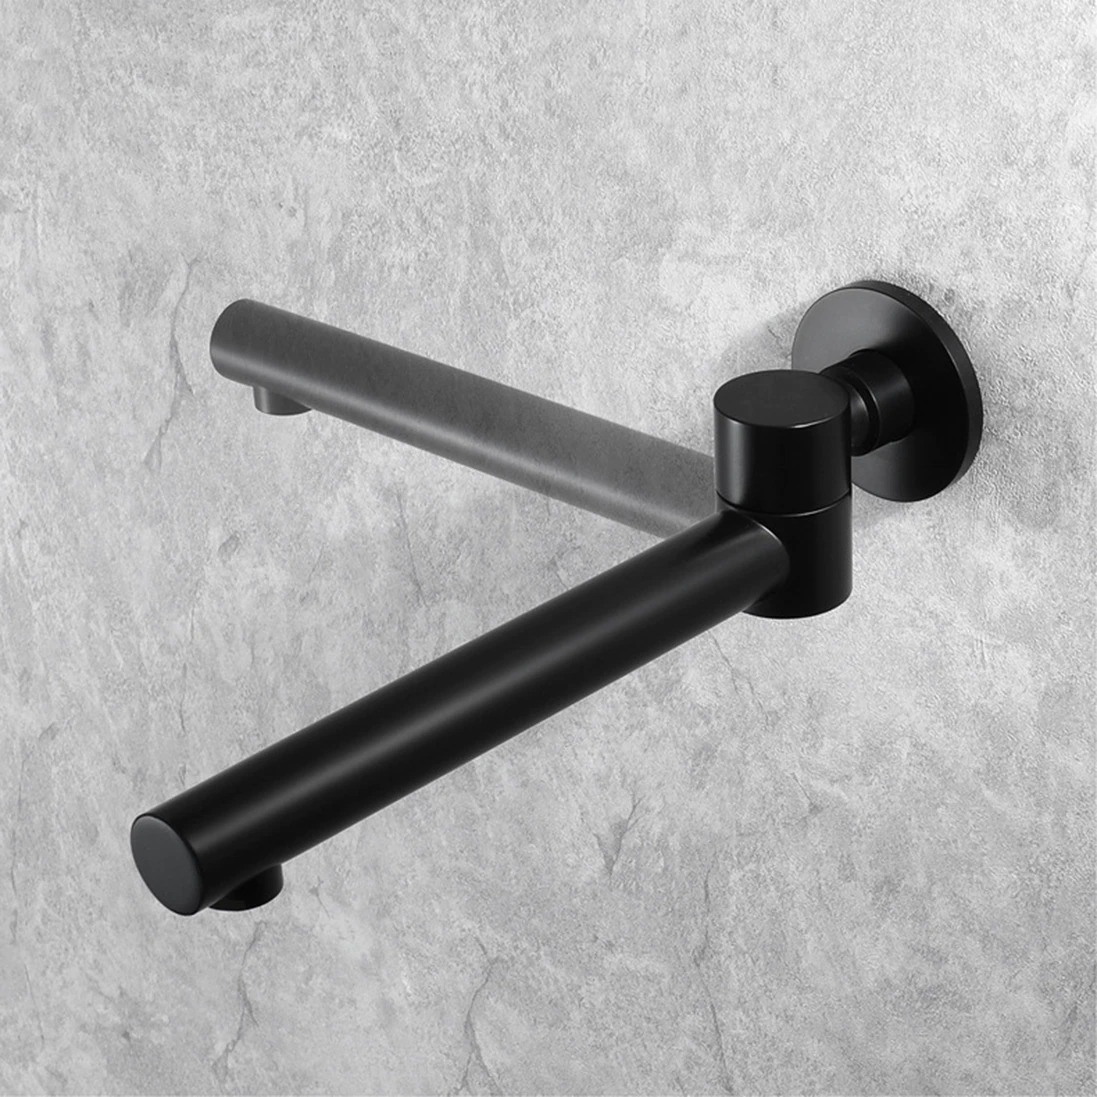 Combo de caño de ducha de una sola manija oculta de tres funciones montado en la pared para baño Cabezal de ducha de baño negro